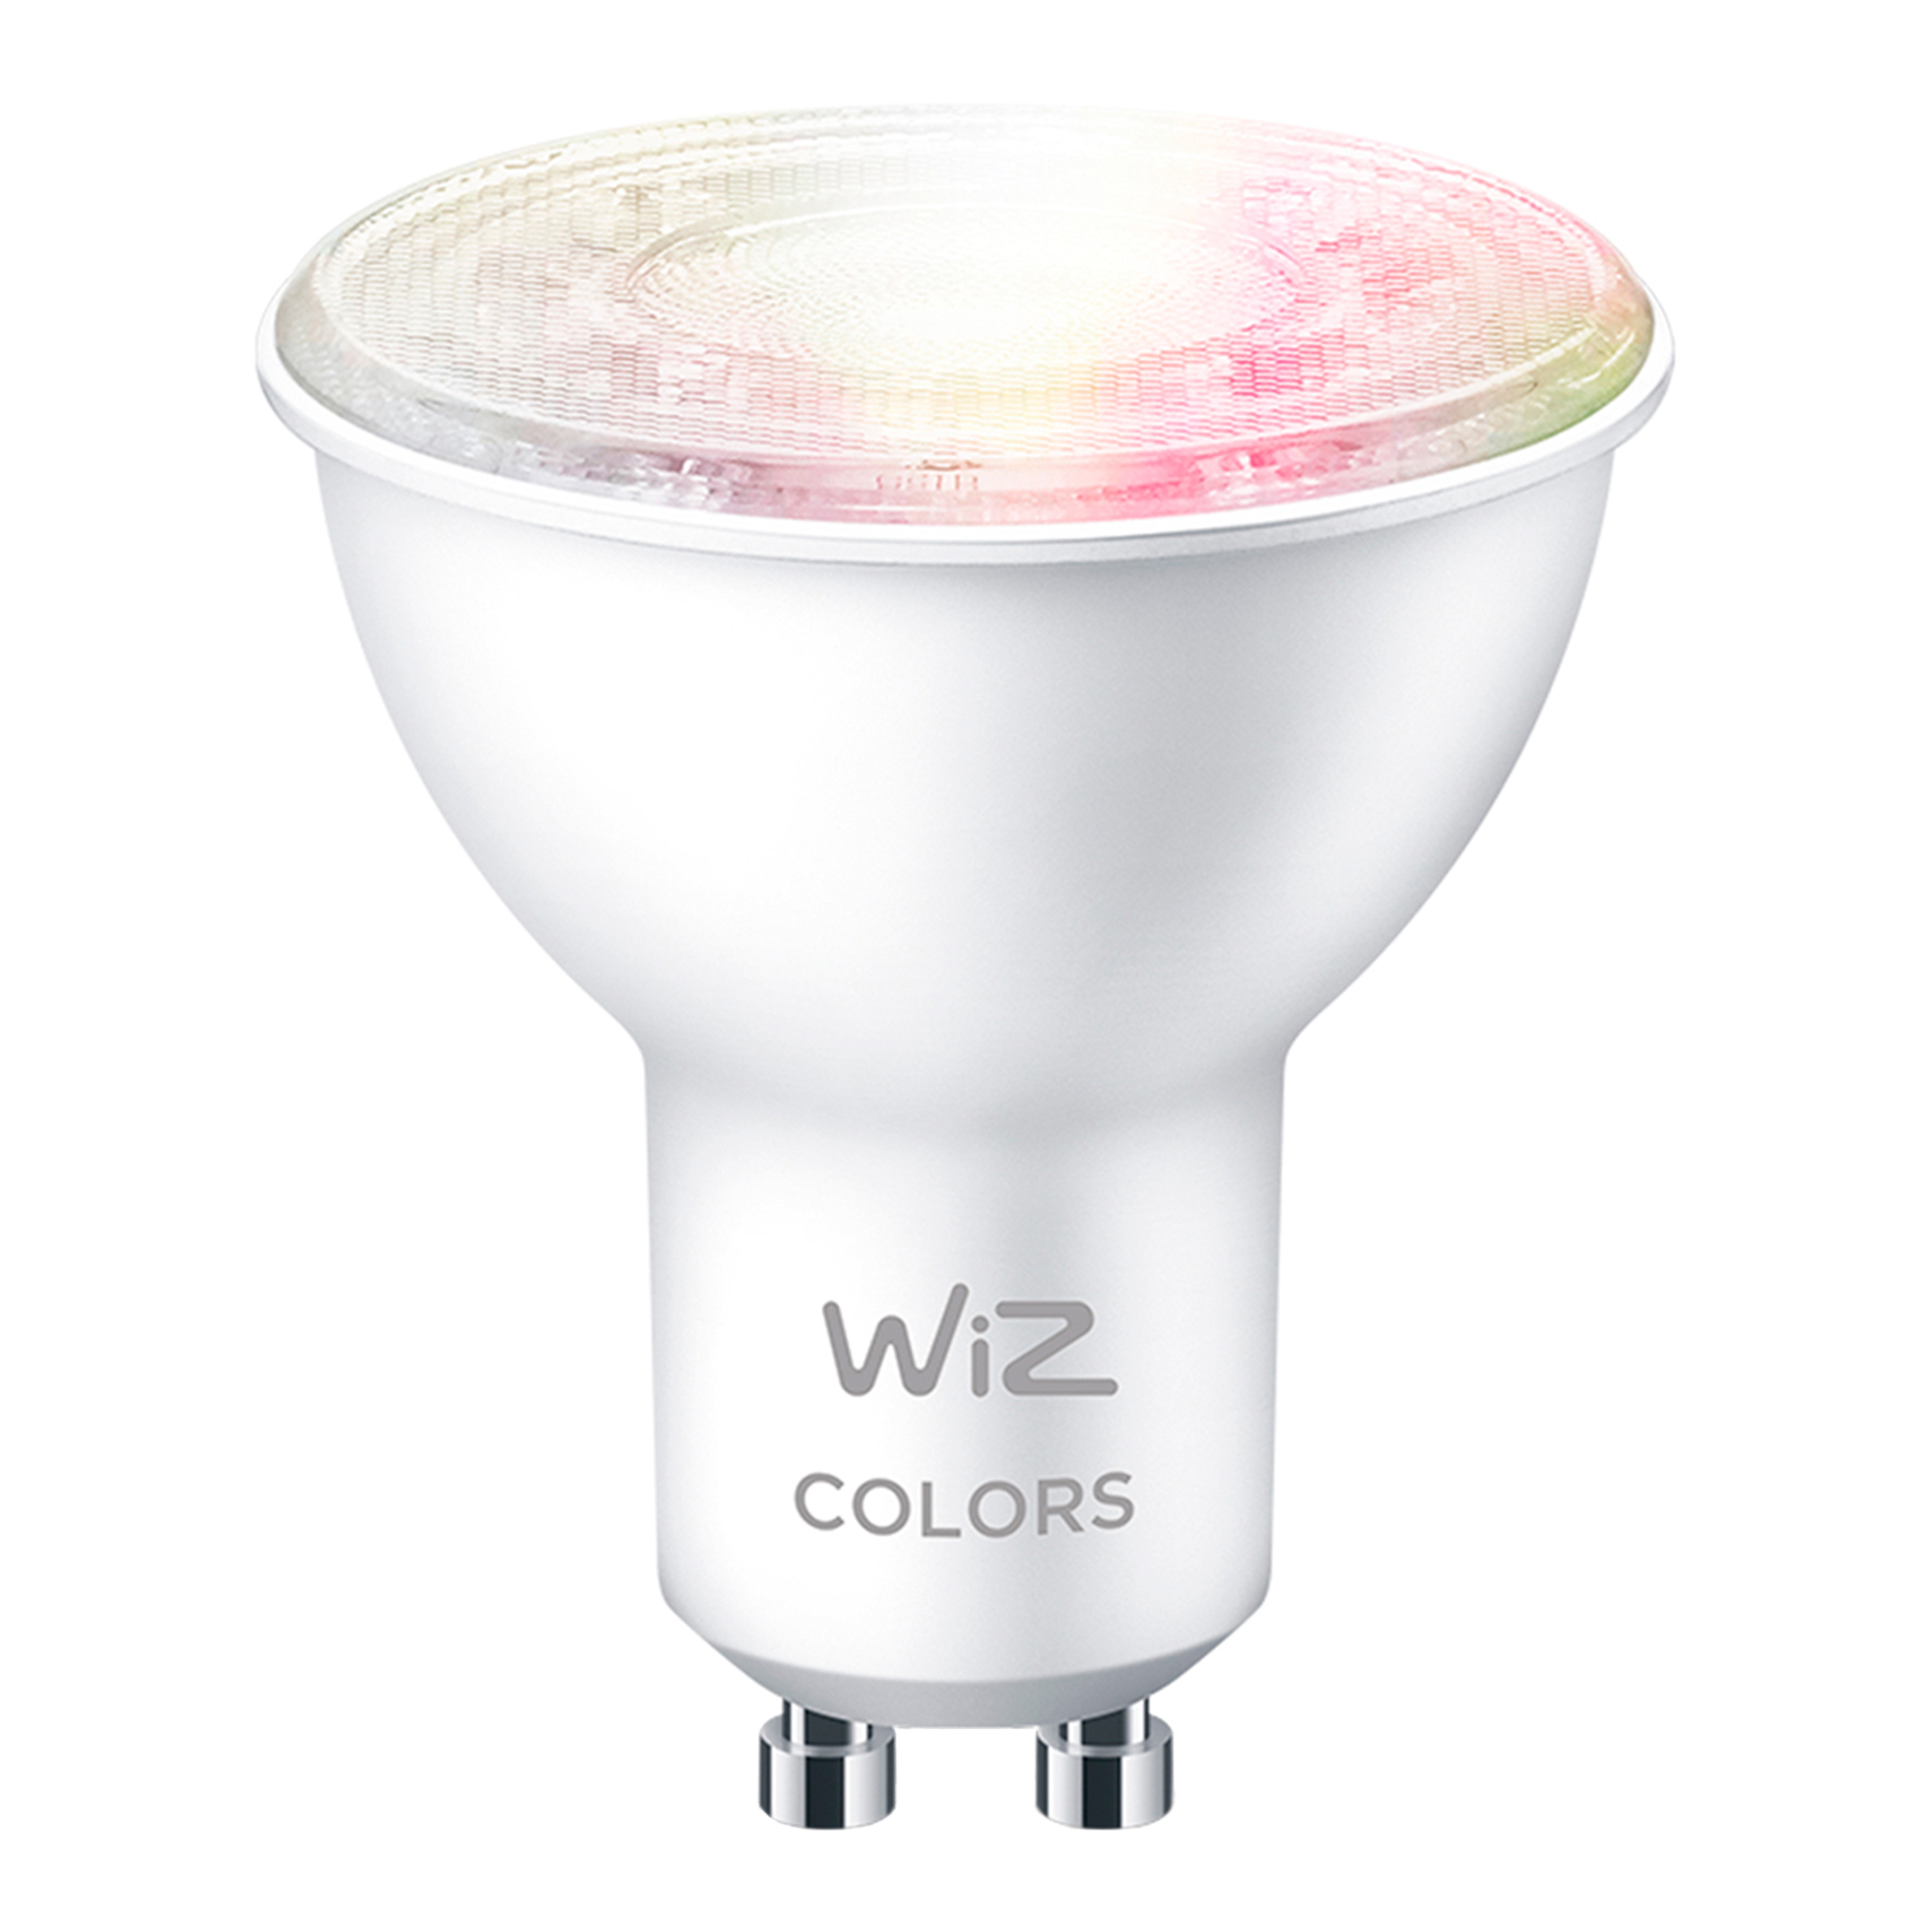 Lmpara Led Inteligente Philips Wiz 4,7W GU10 Blanco Y Color